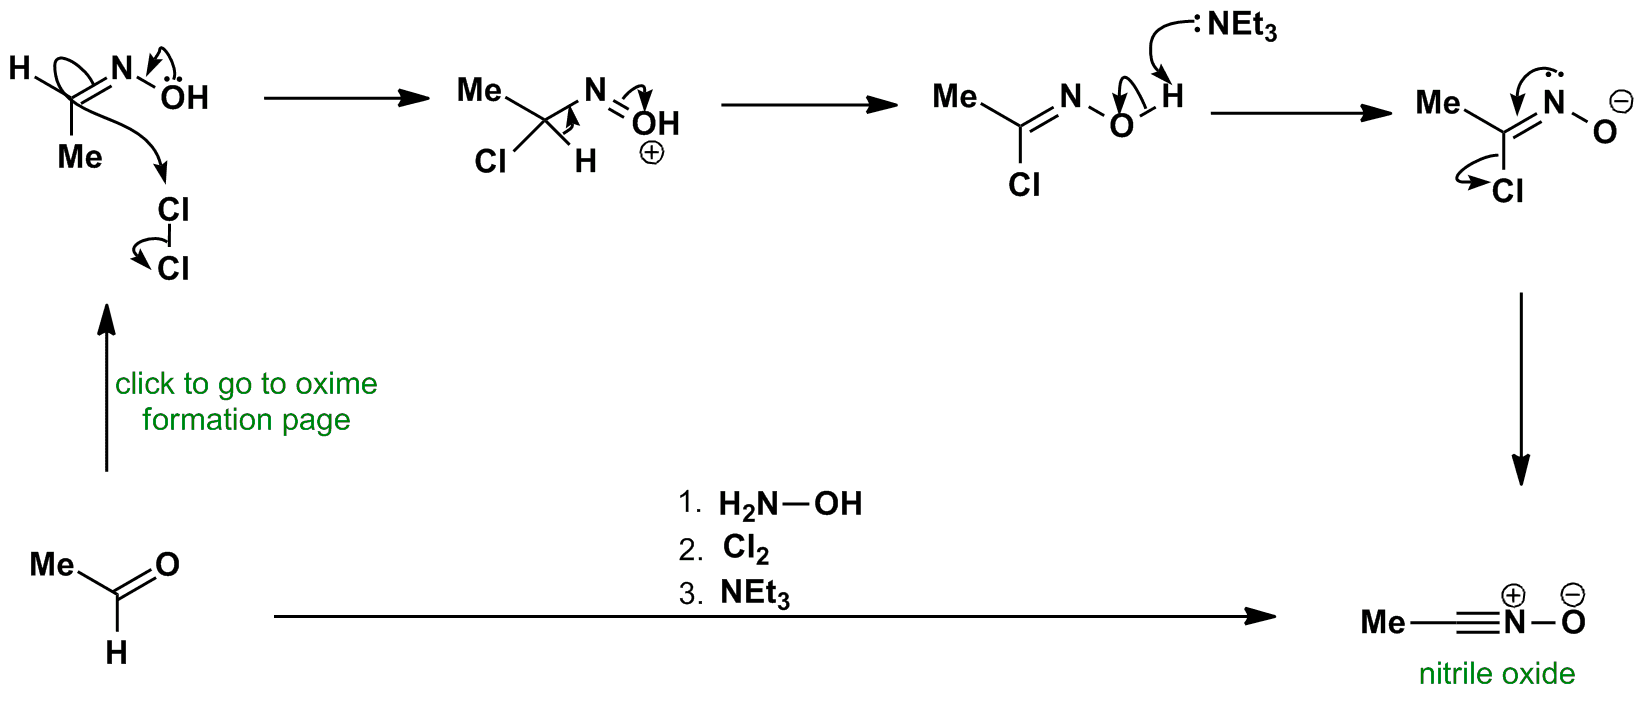 Nitrile oxide formation mechanism